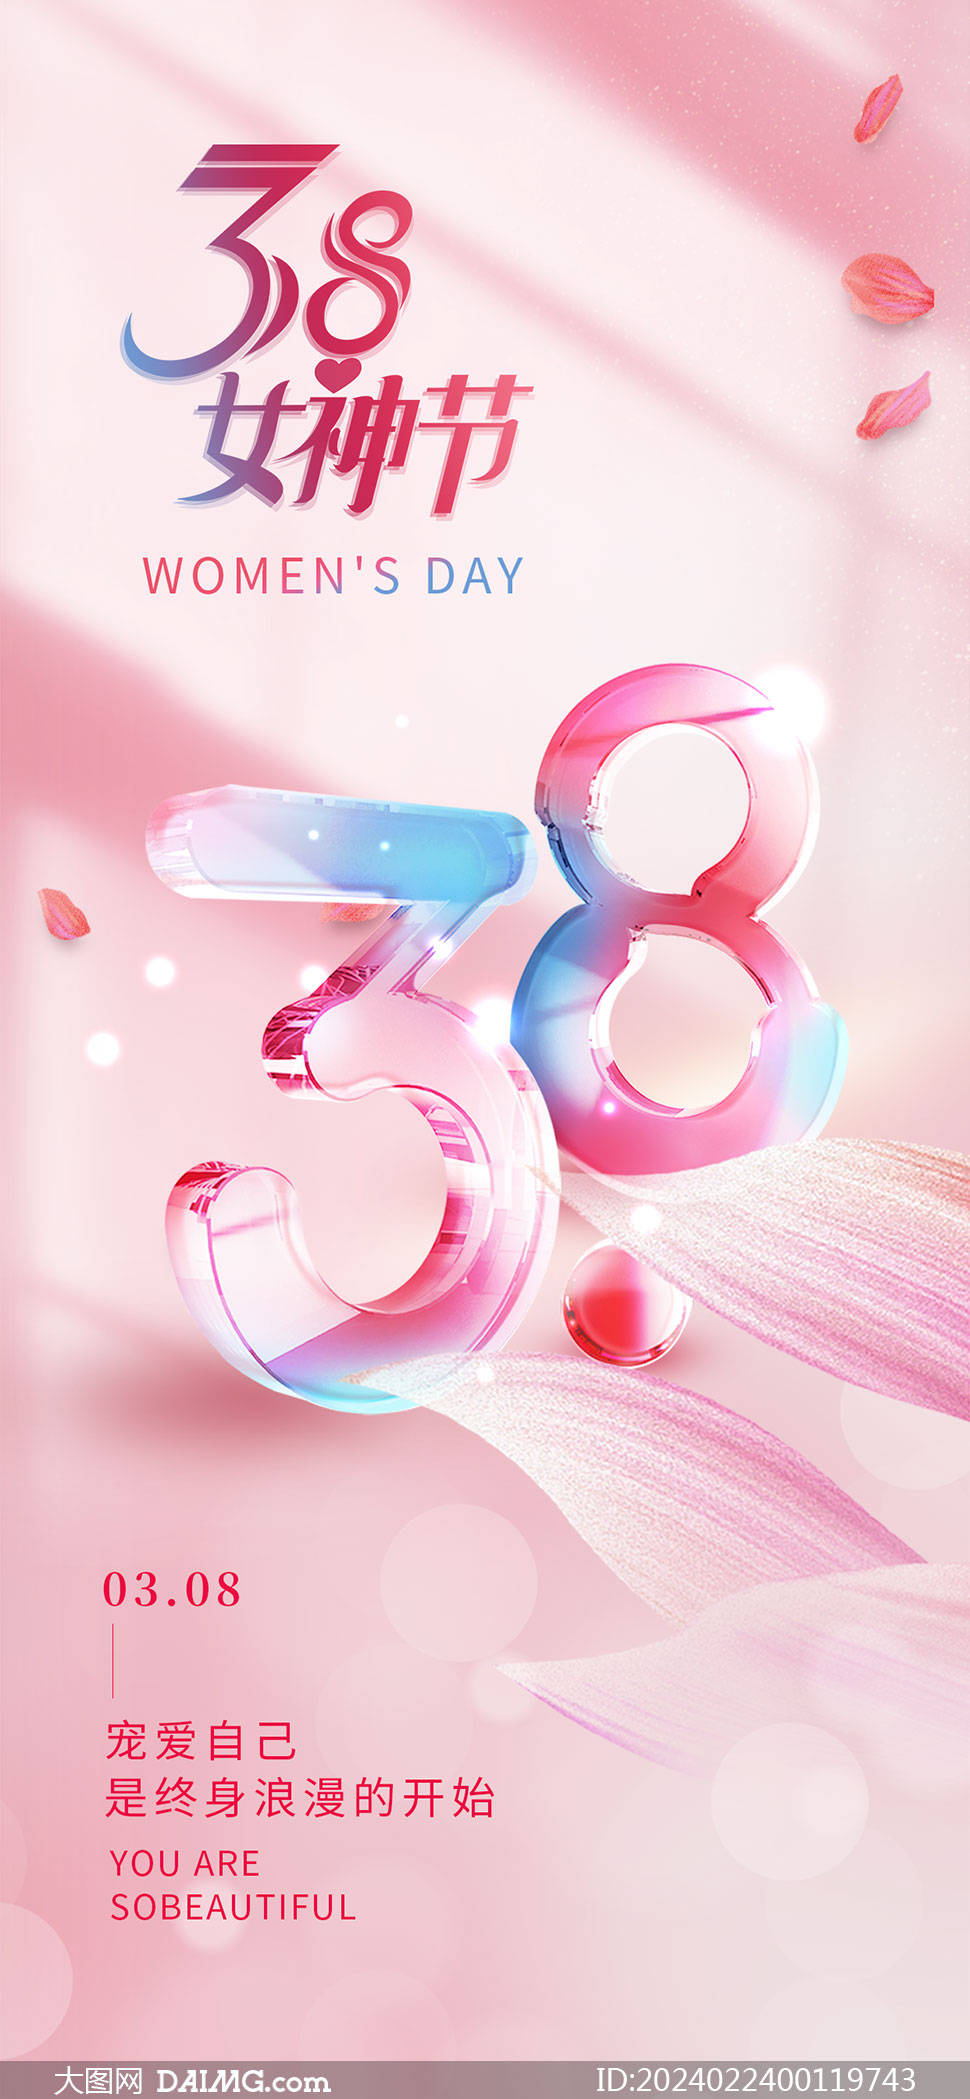 药店38妇女节活动海报图片